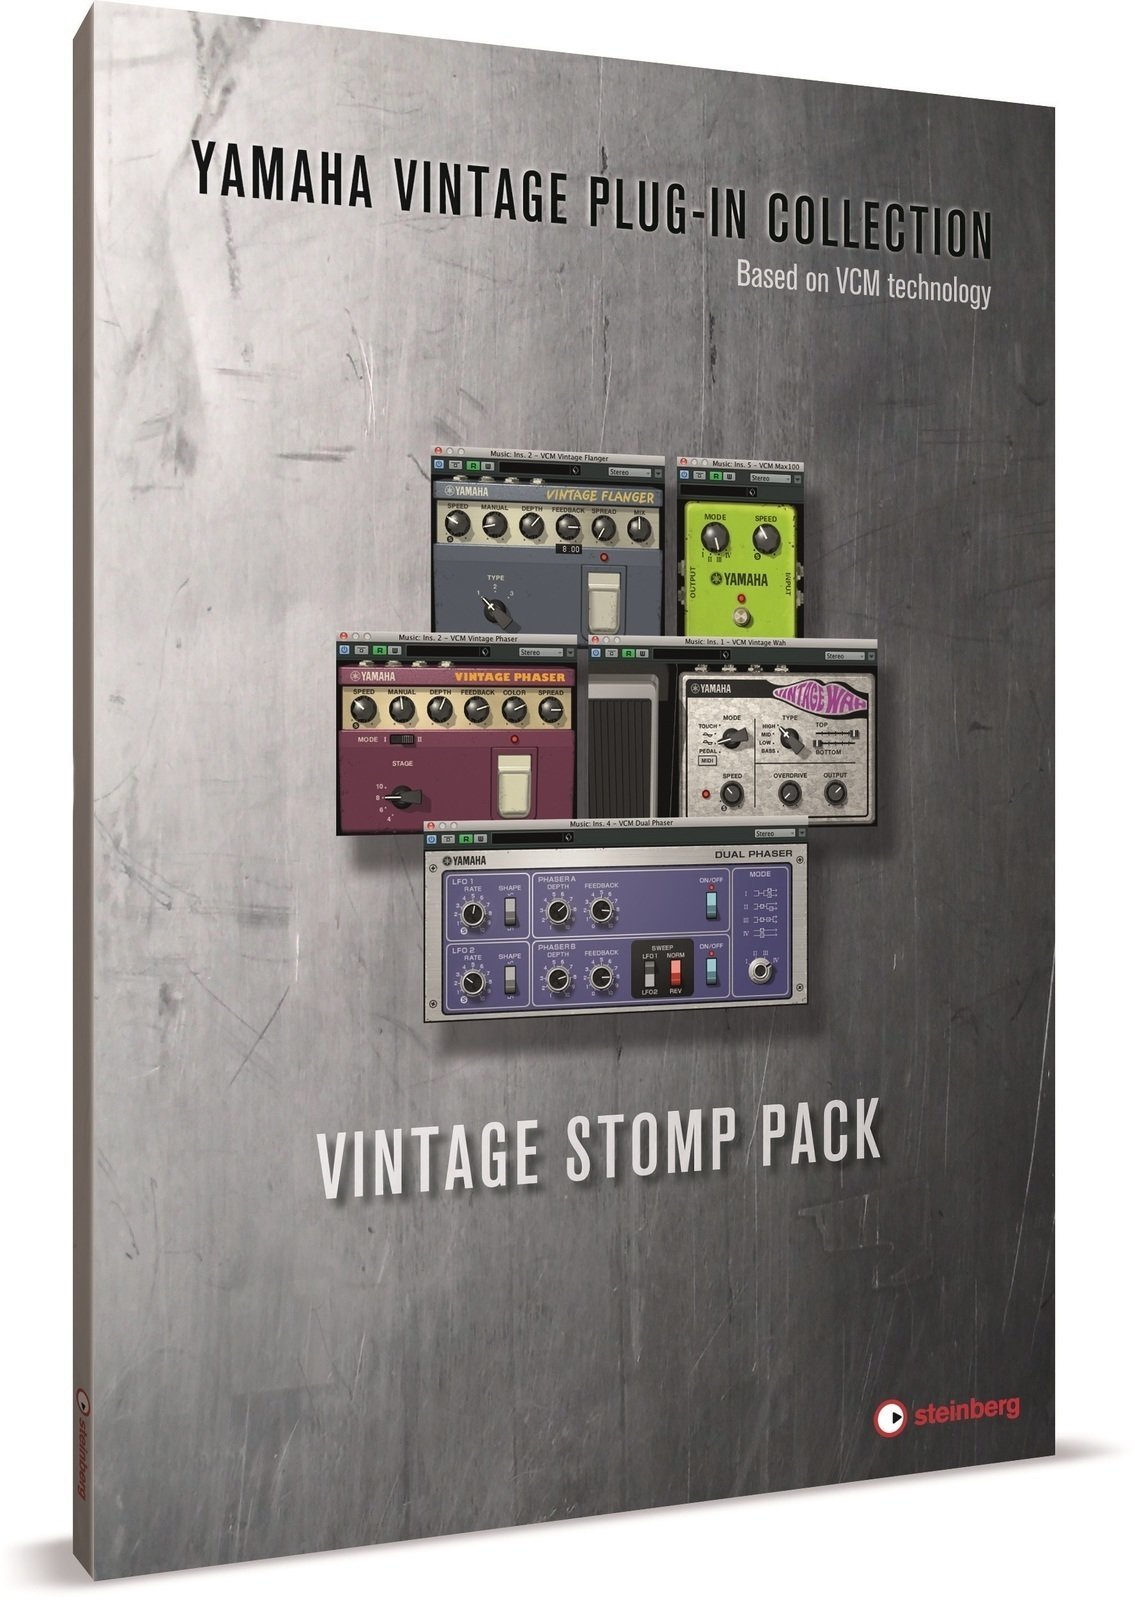 Štúdiový software VST Instrument Steinberg Vintage Stomp Pack